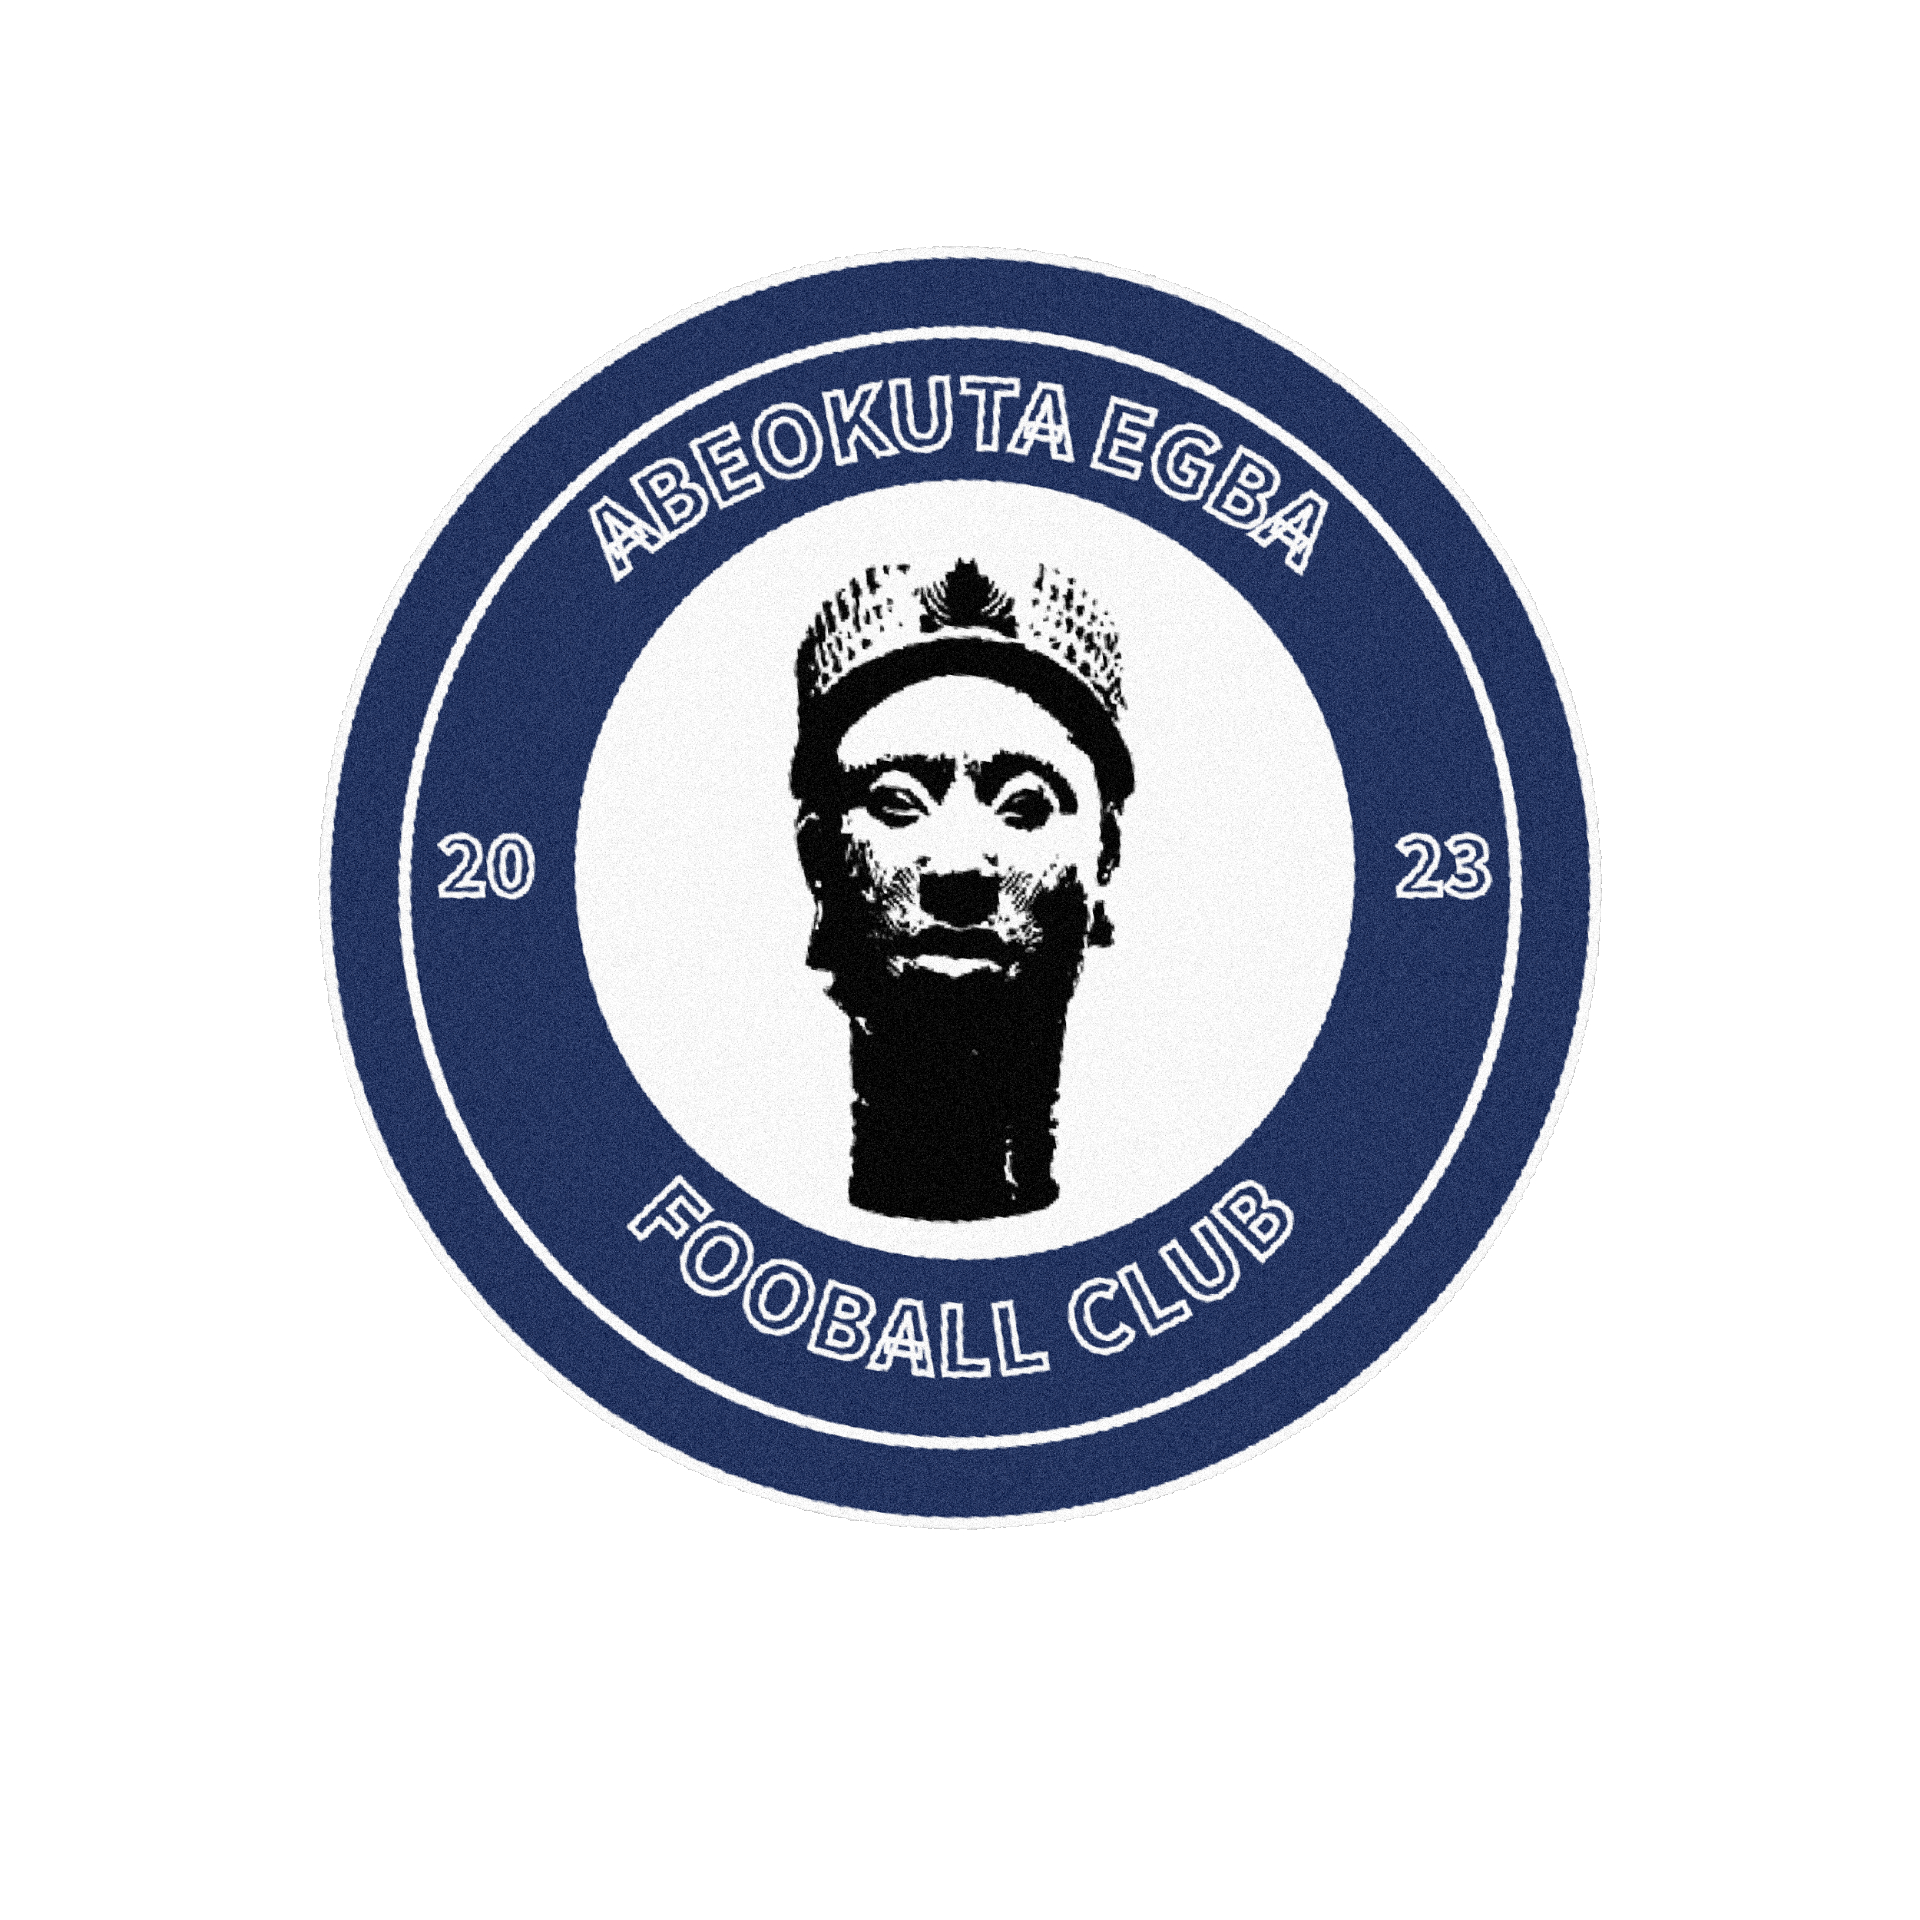 This is the Abeokuta club badge.